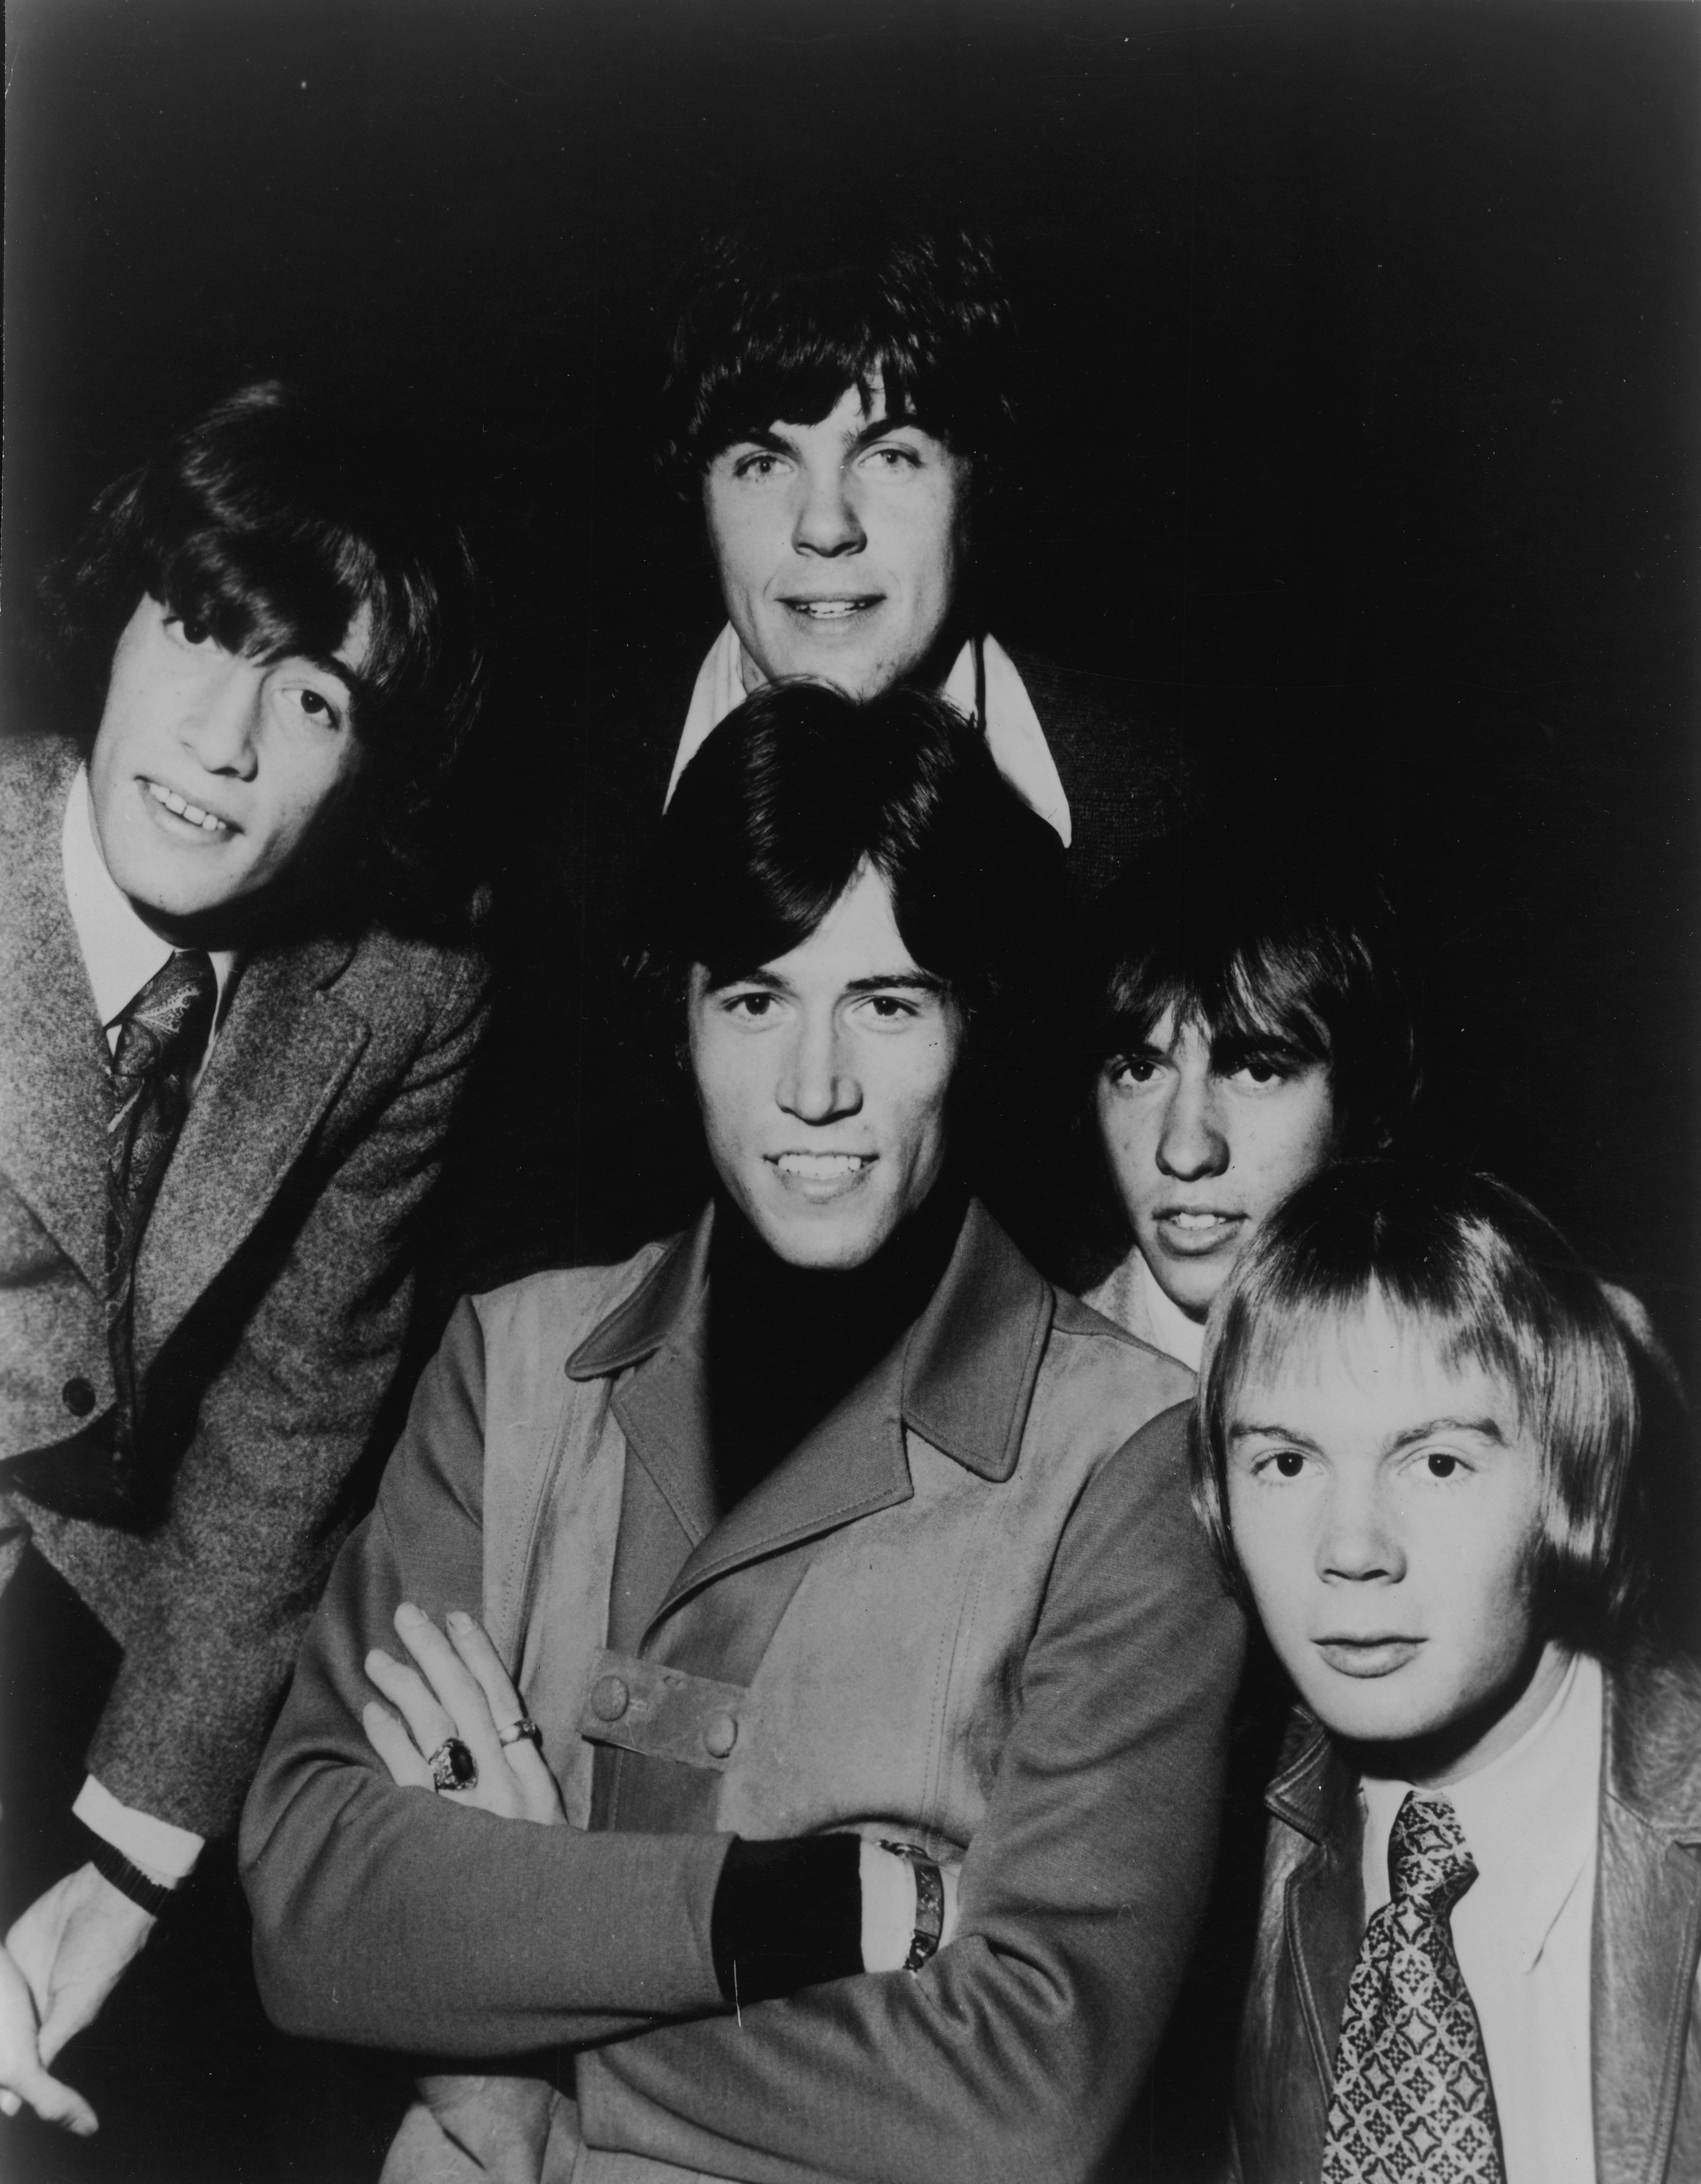 La banda británico-australiana, The Bee Gees, fotografiada a fines de la década de 1960. | Foto: Getty Images